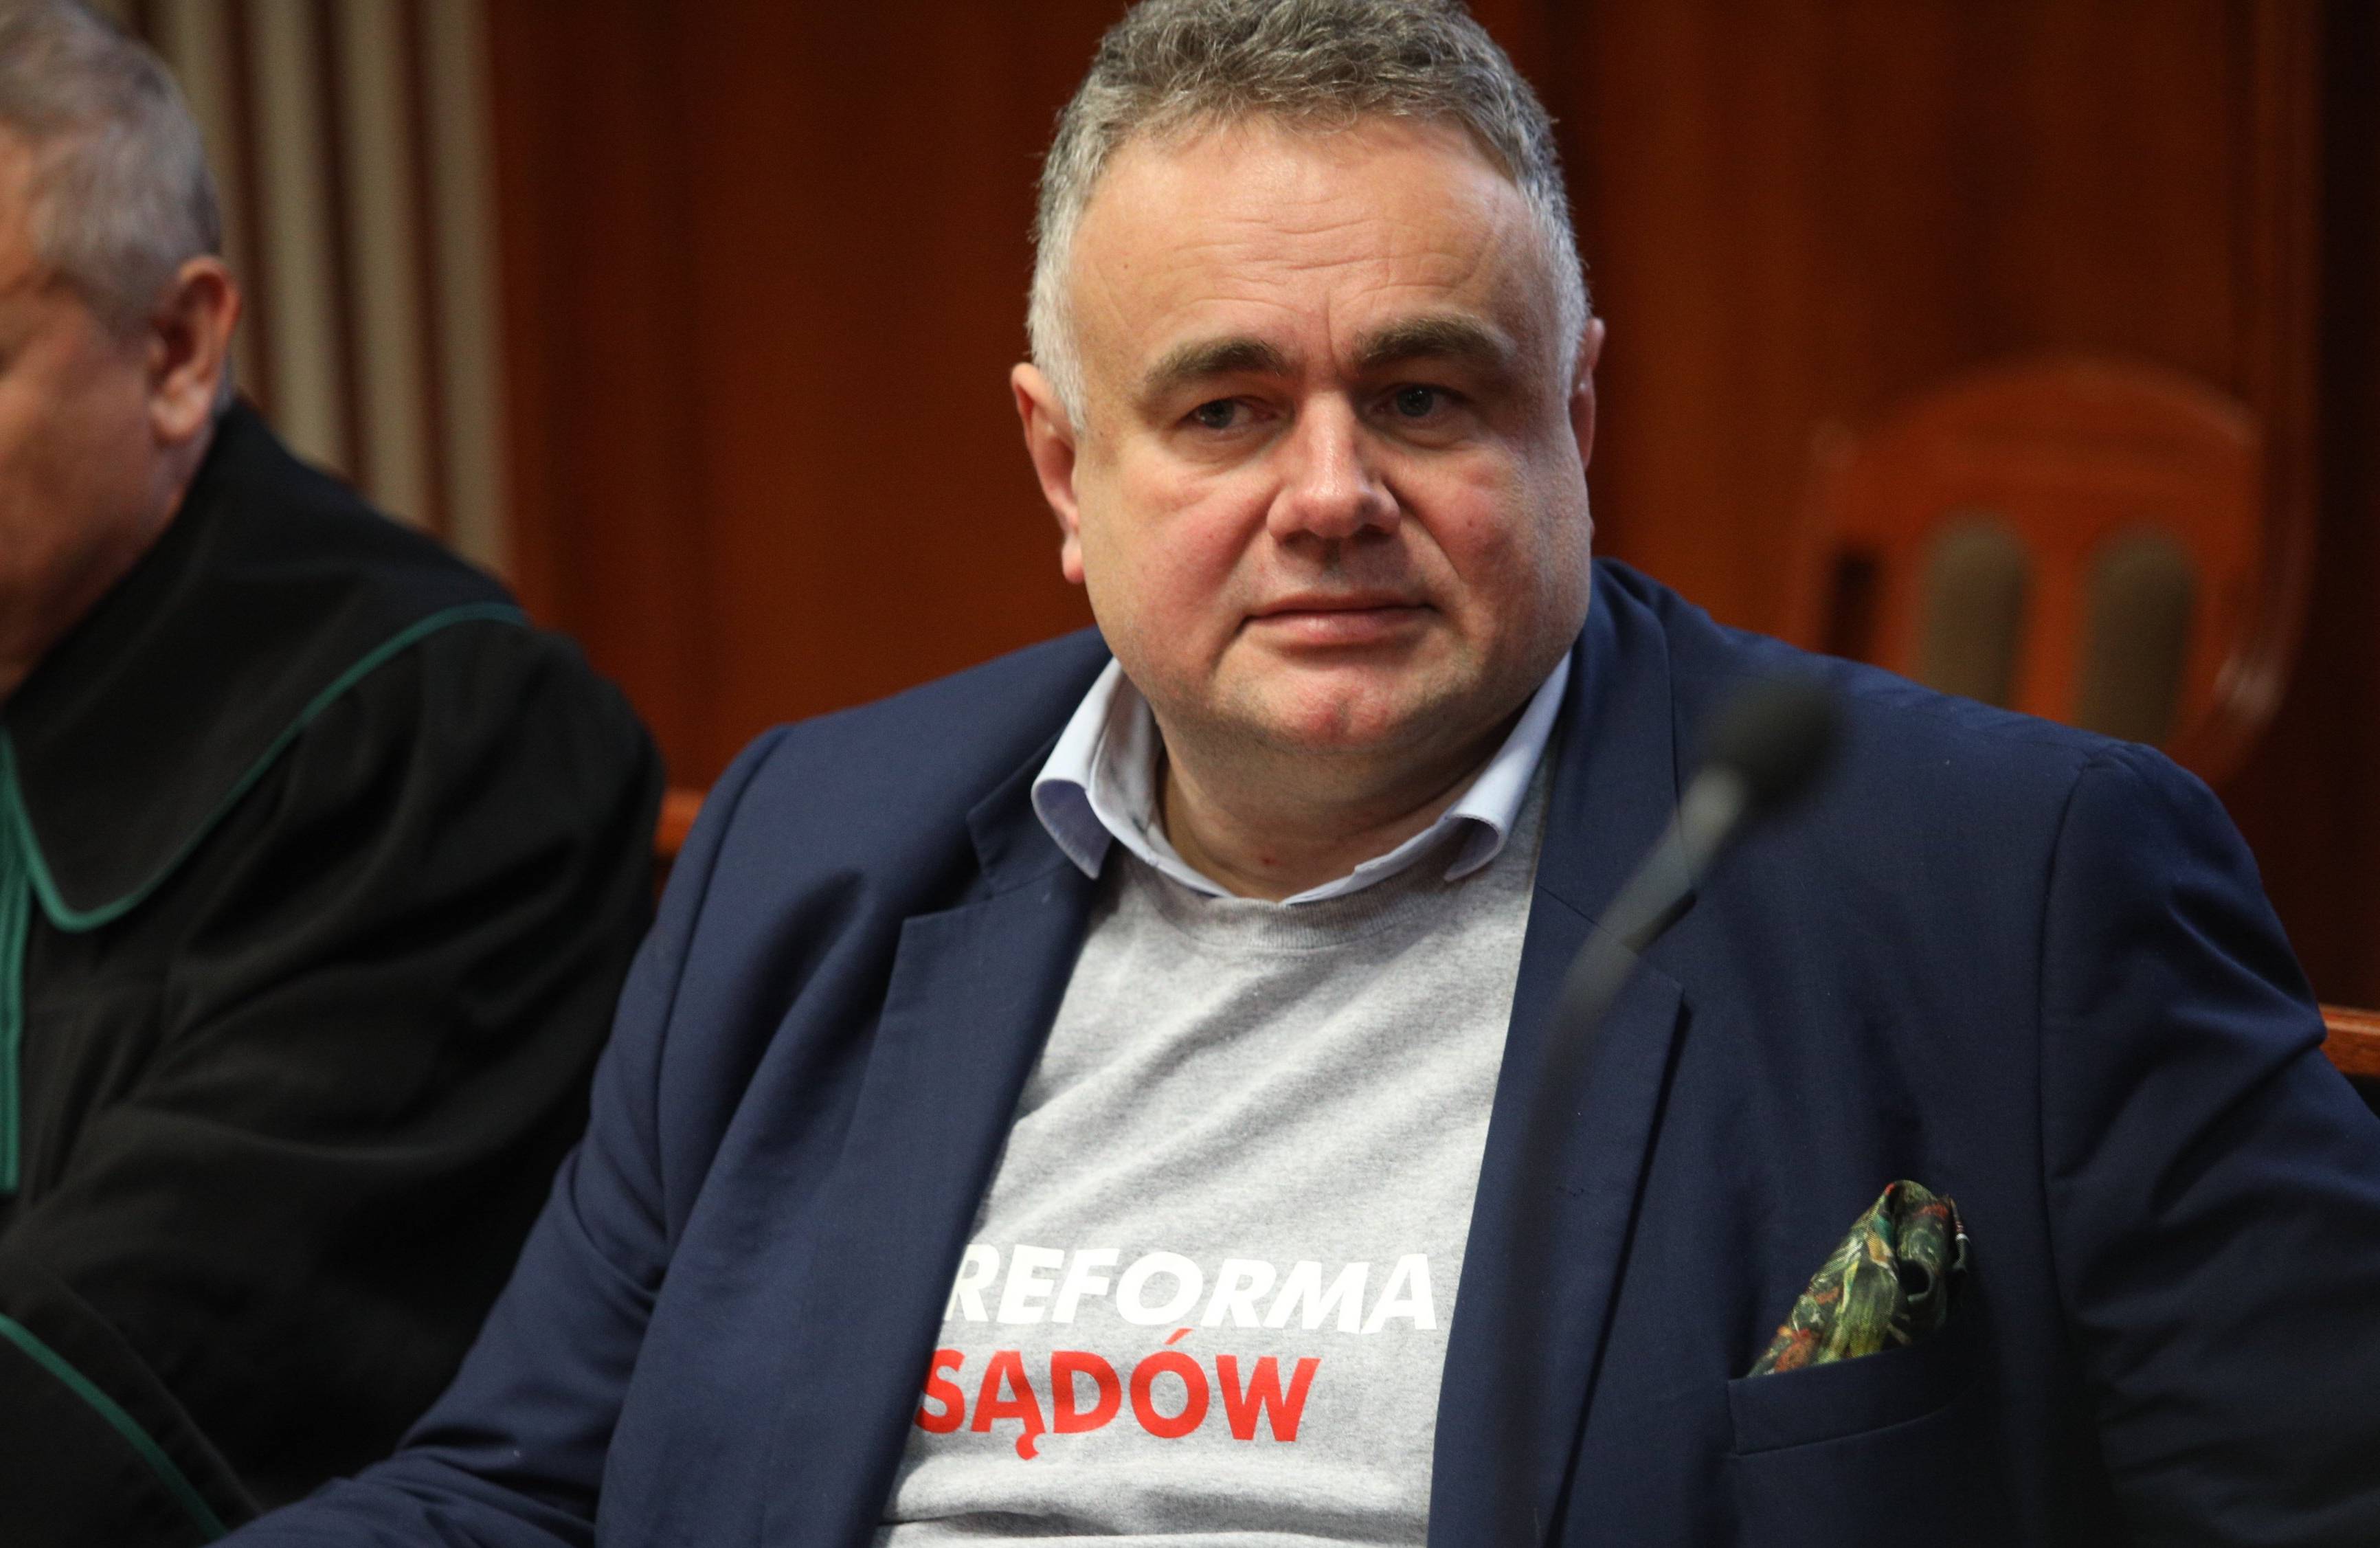 Tomasz Sakiewicz w koszulce z napisem Reforma sądów siedzi na sali sądowej obok adwokata